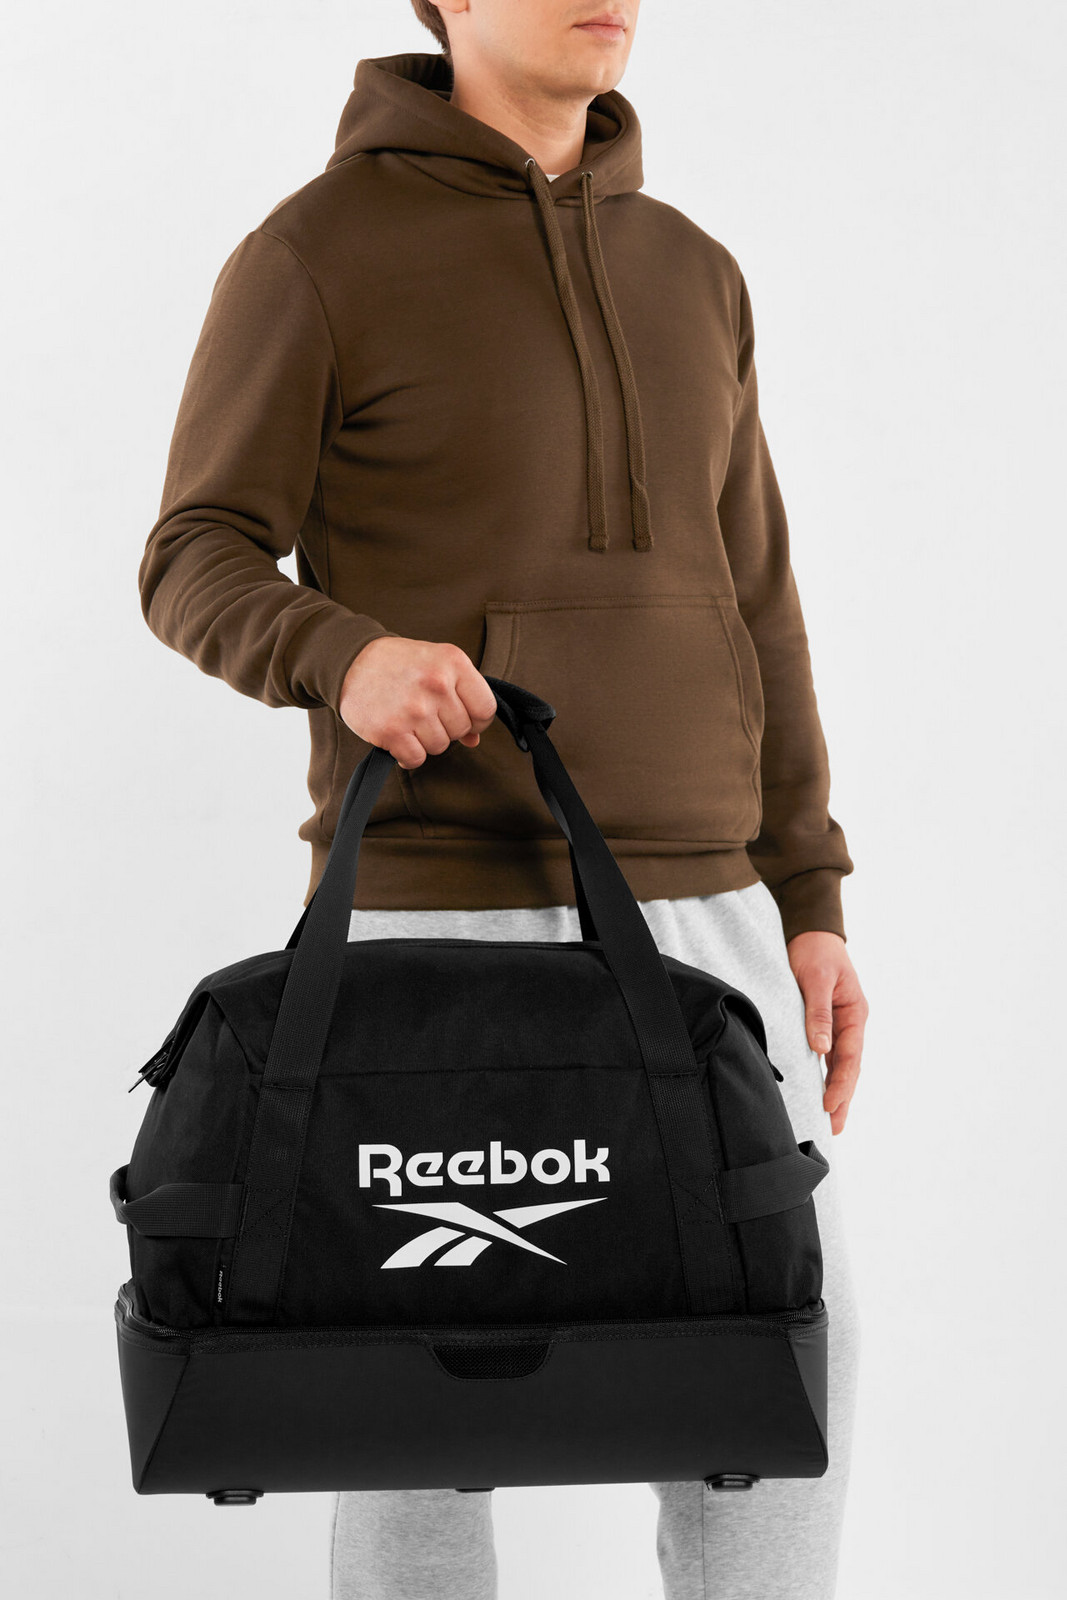 Batohy a tašky Reebok RBK-010-CCC-05